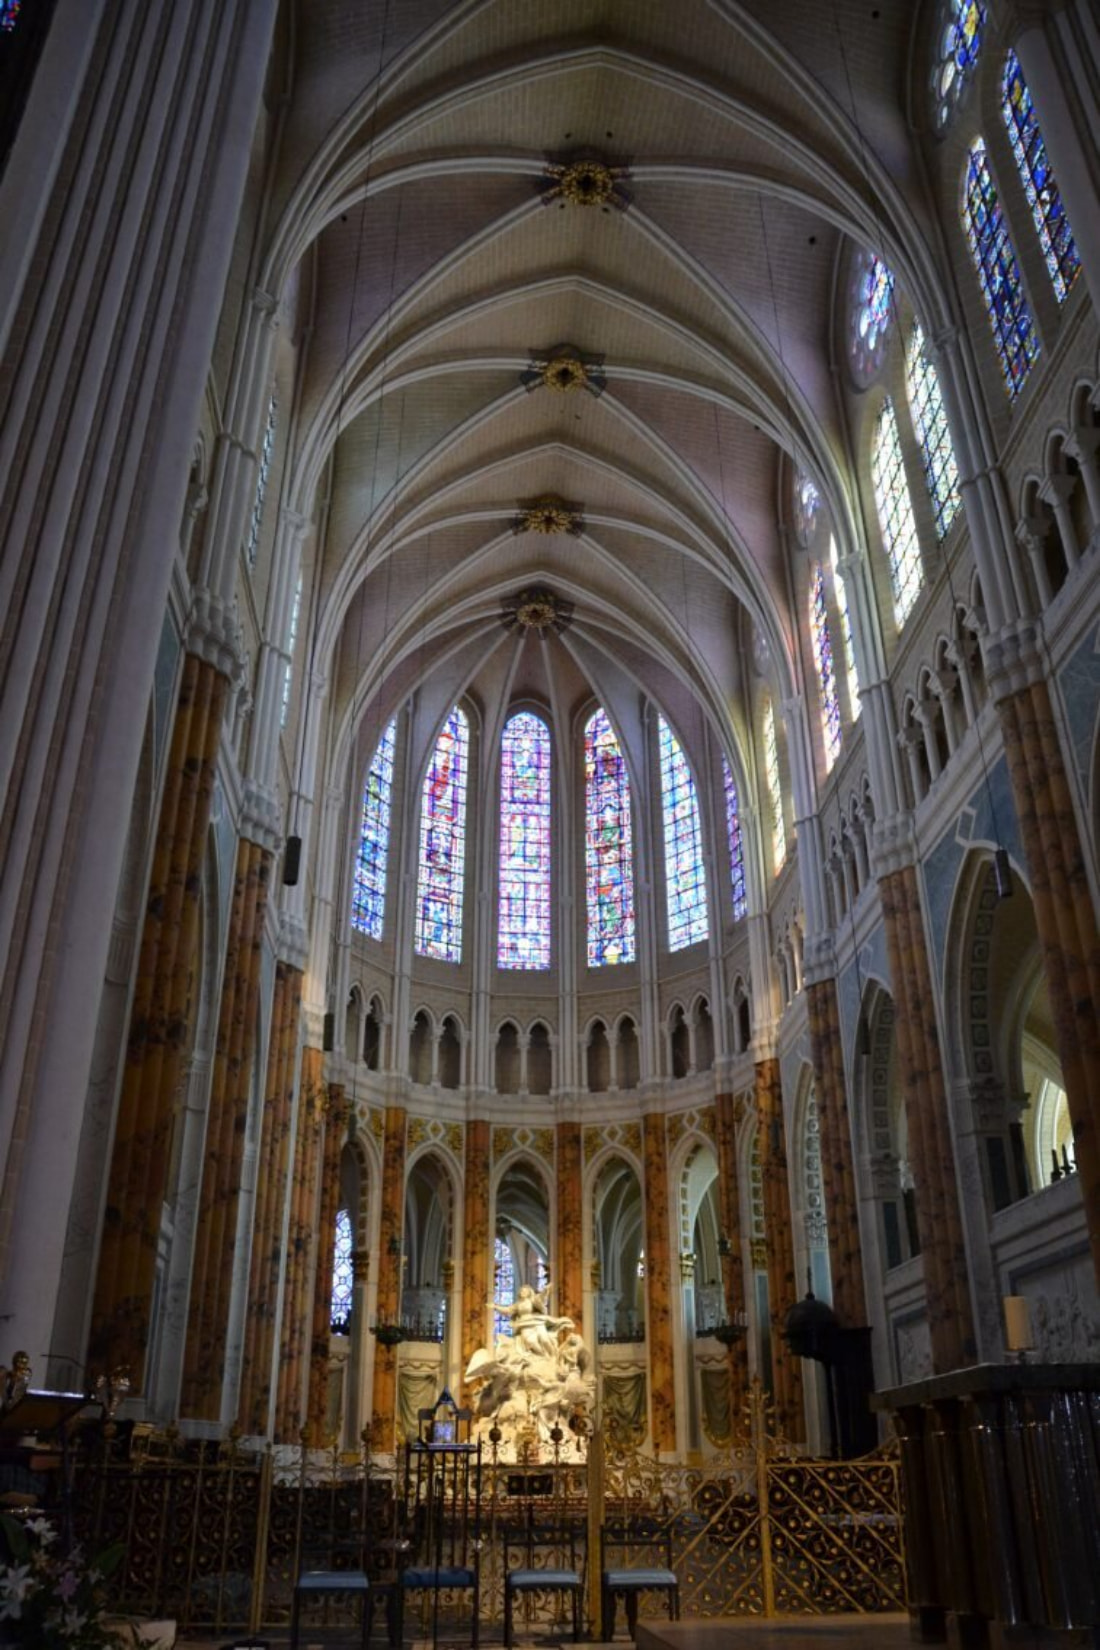 Thiết kế mái vòm nhọn và những ô cửa sổ nhiều màu của Nhà thờ Chartres của Pháp thời Trung cổ